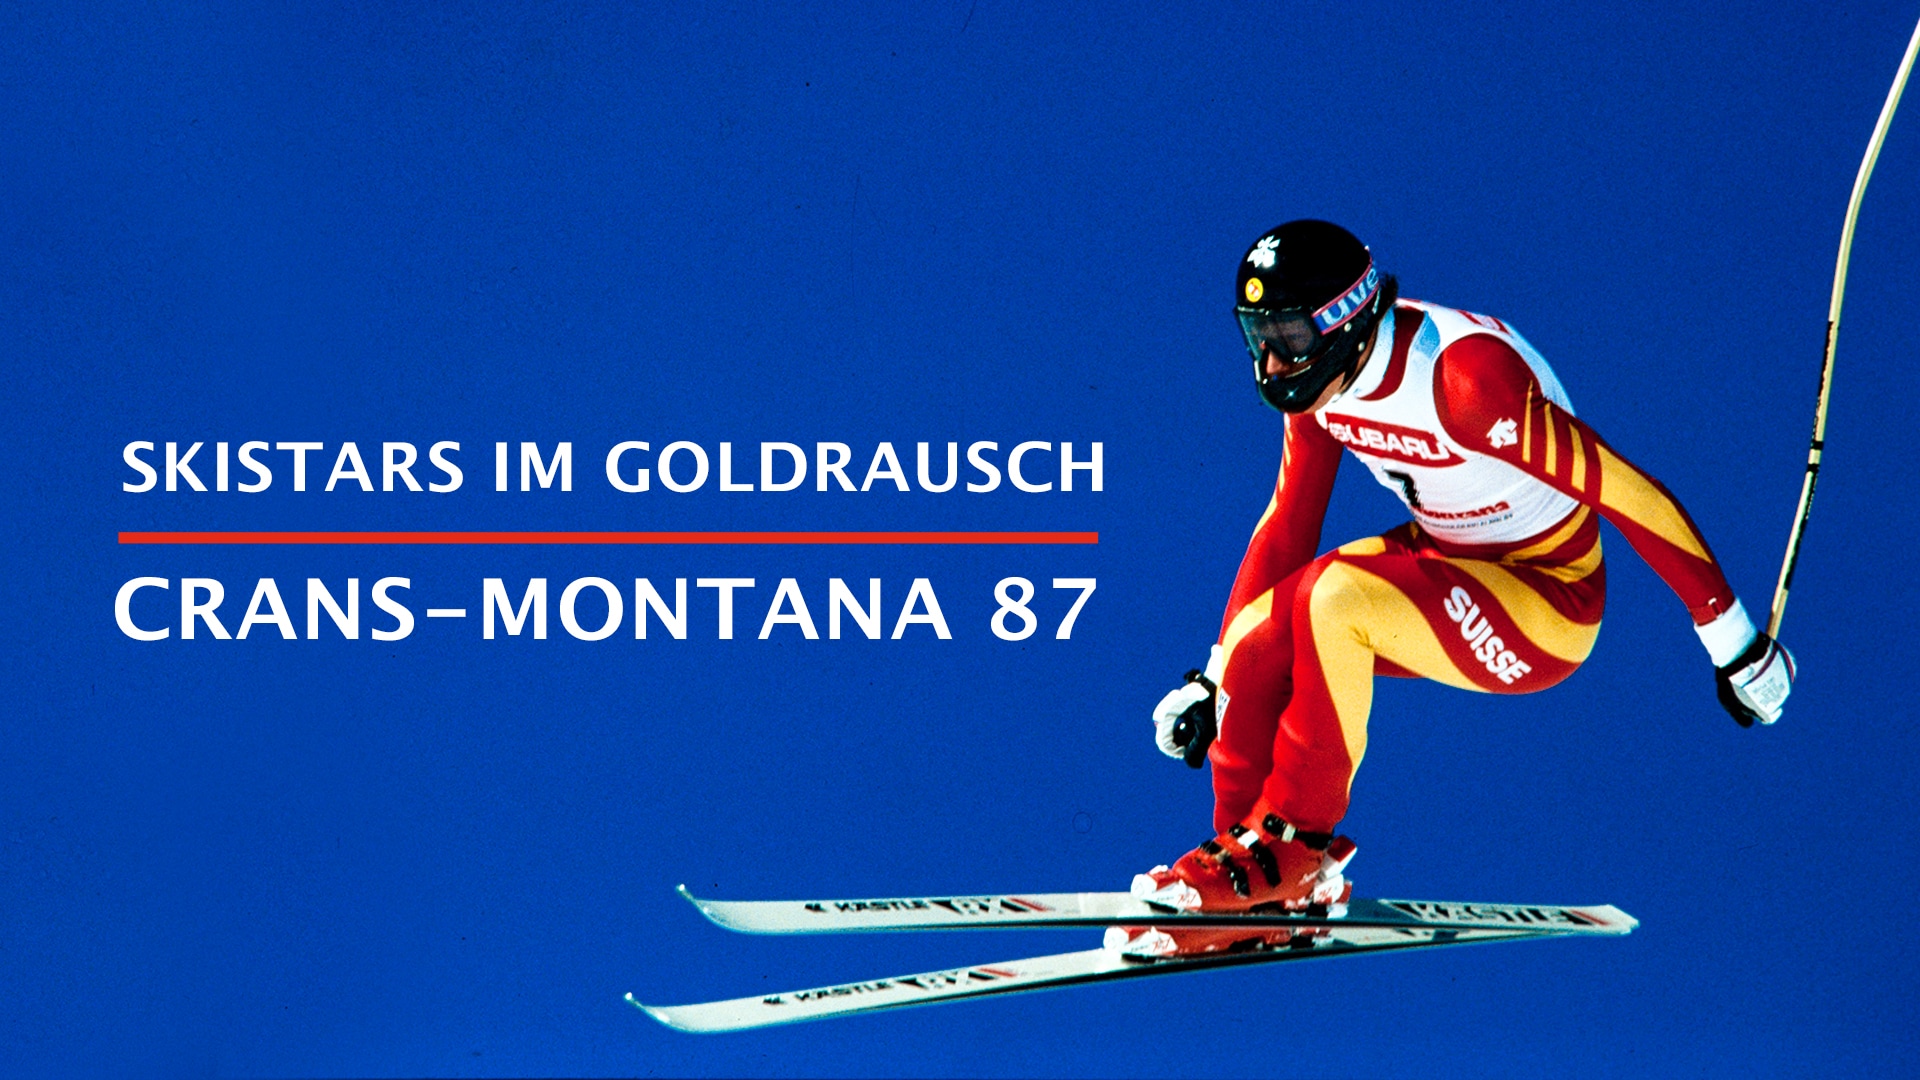 Skistars im Goldrausch – Der Triumph von Crans-Montana